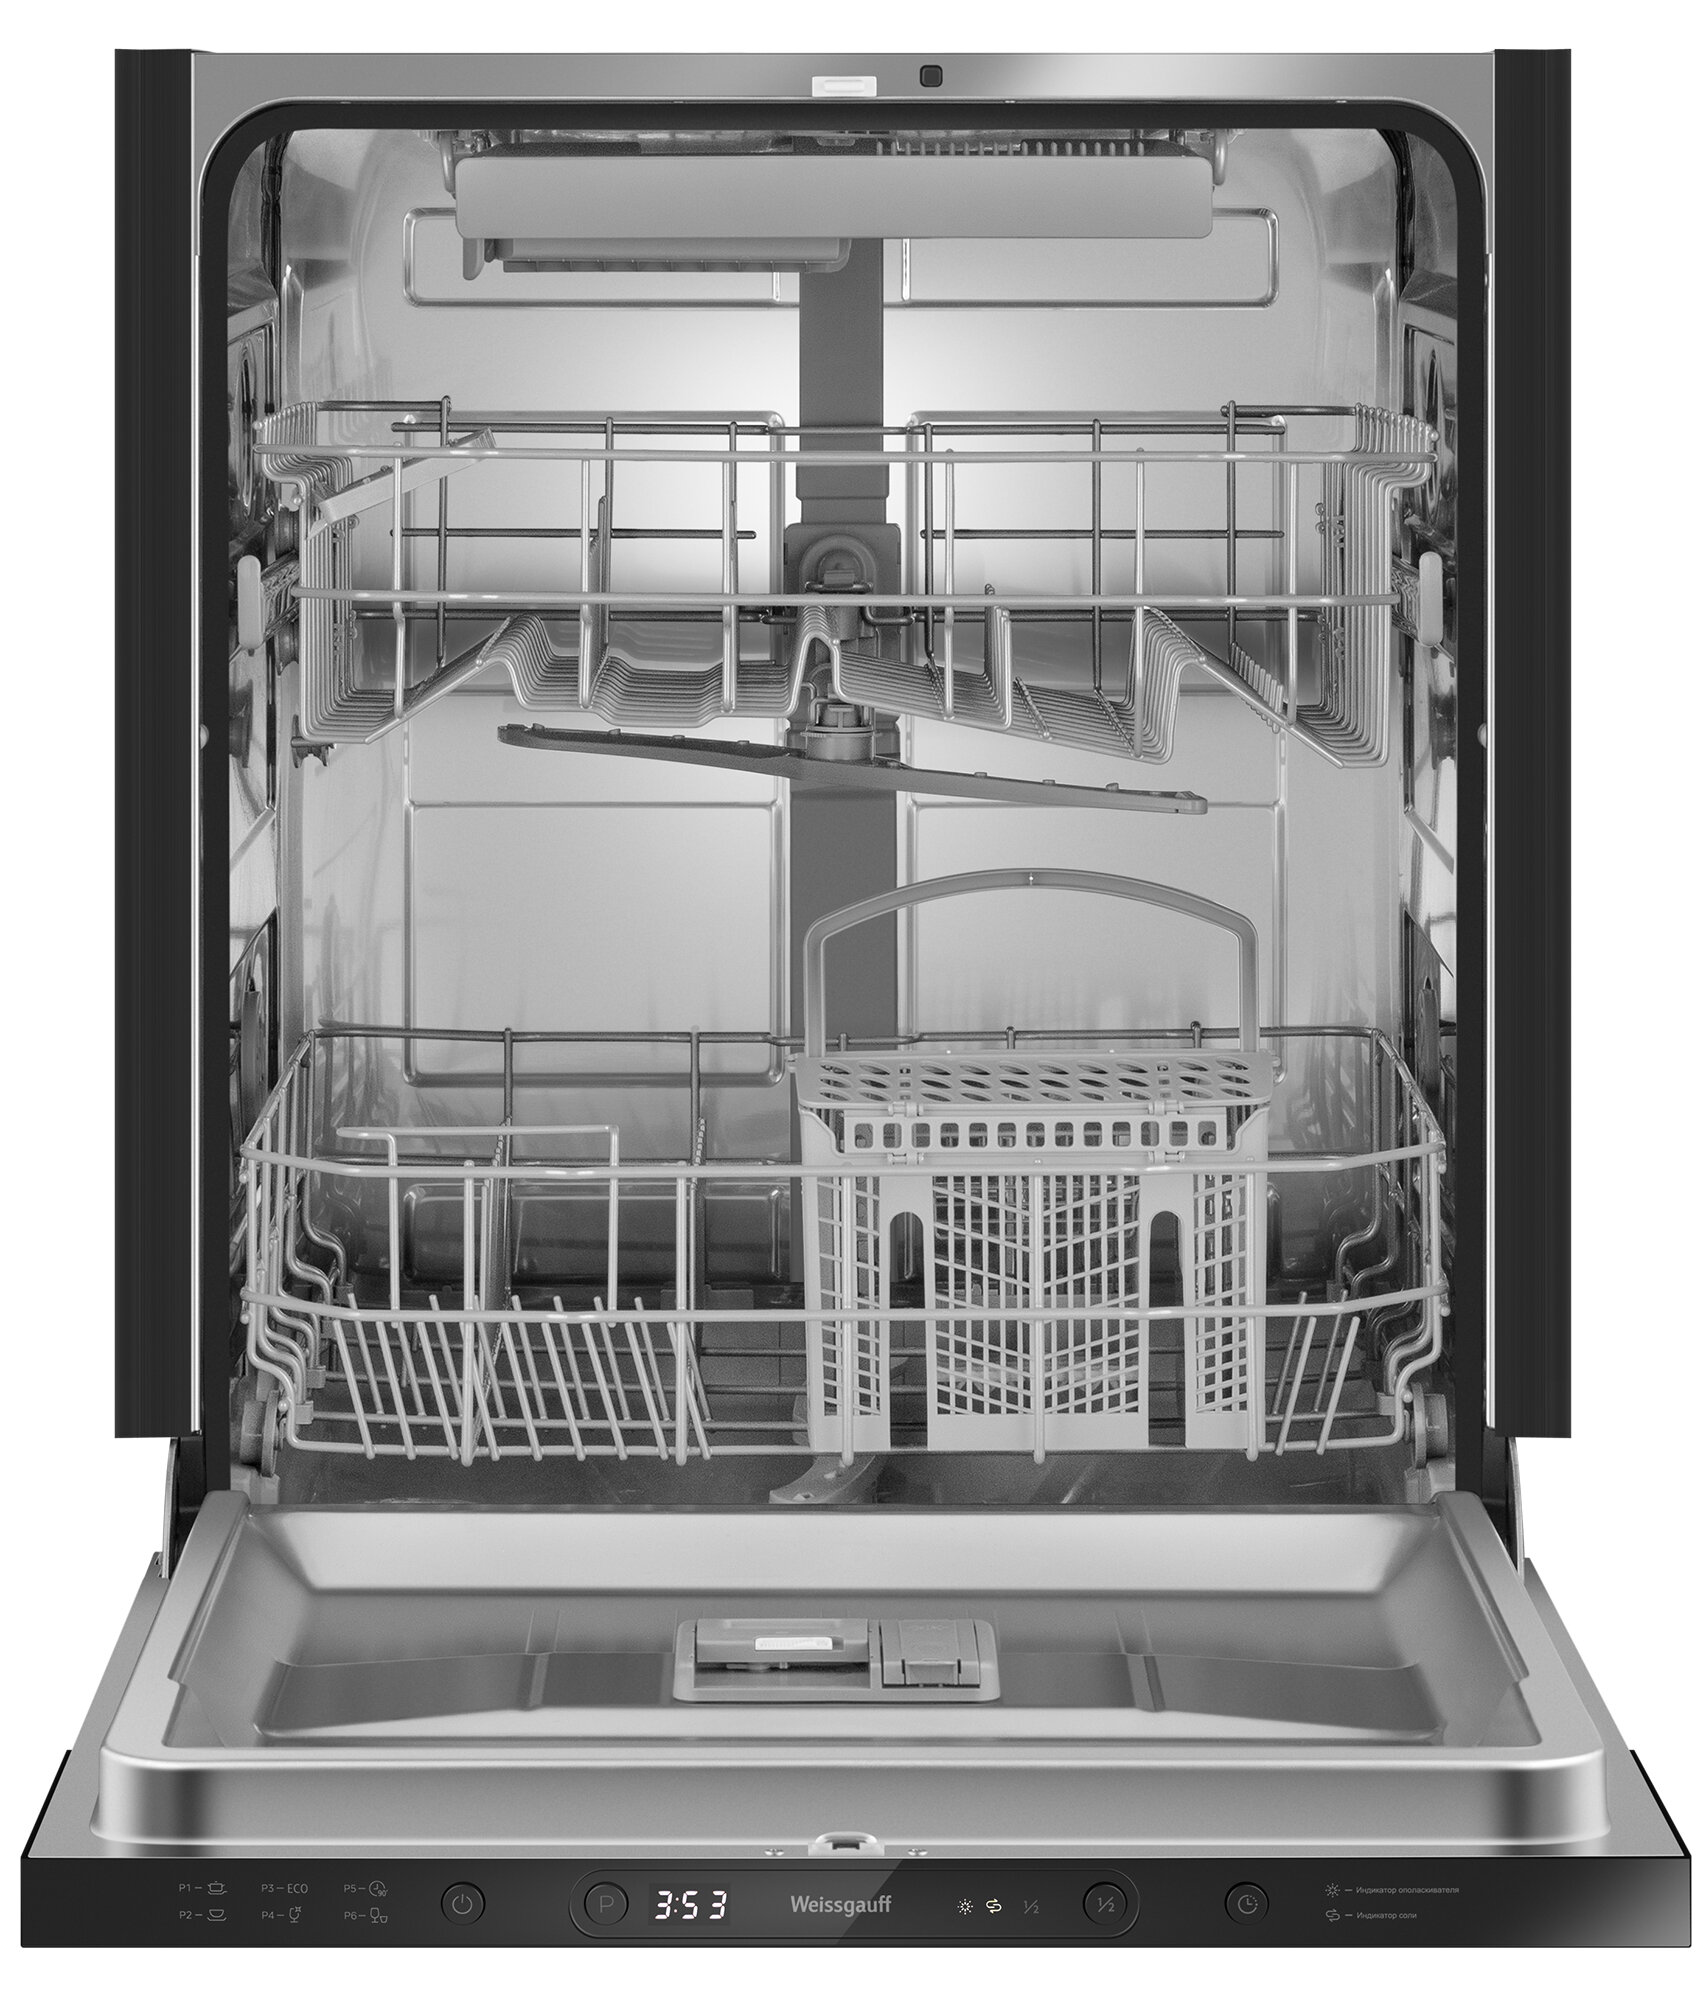 Встраиваемая посудомоечная машина с авто-открываниемWeissgauff BDW 6036 D AutoOpen,3 года гарантии, 14 комплектов посуды, 3 корзины, 6 программ, половинная загрузка, быстрый режим 30 минут, экономичная программа, таймер, электронное управление, дозагрузка